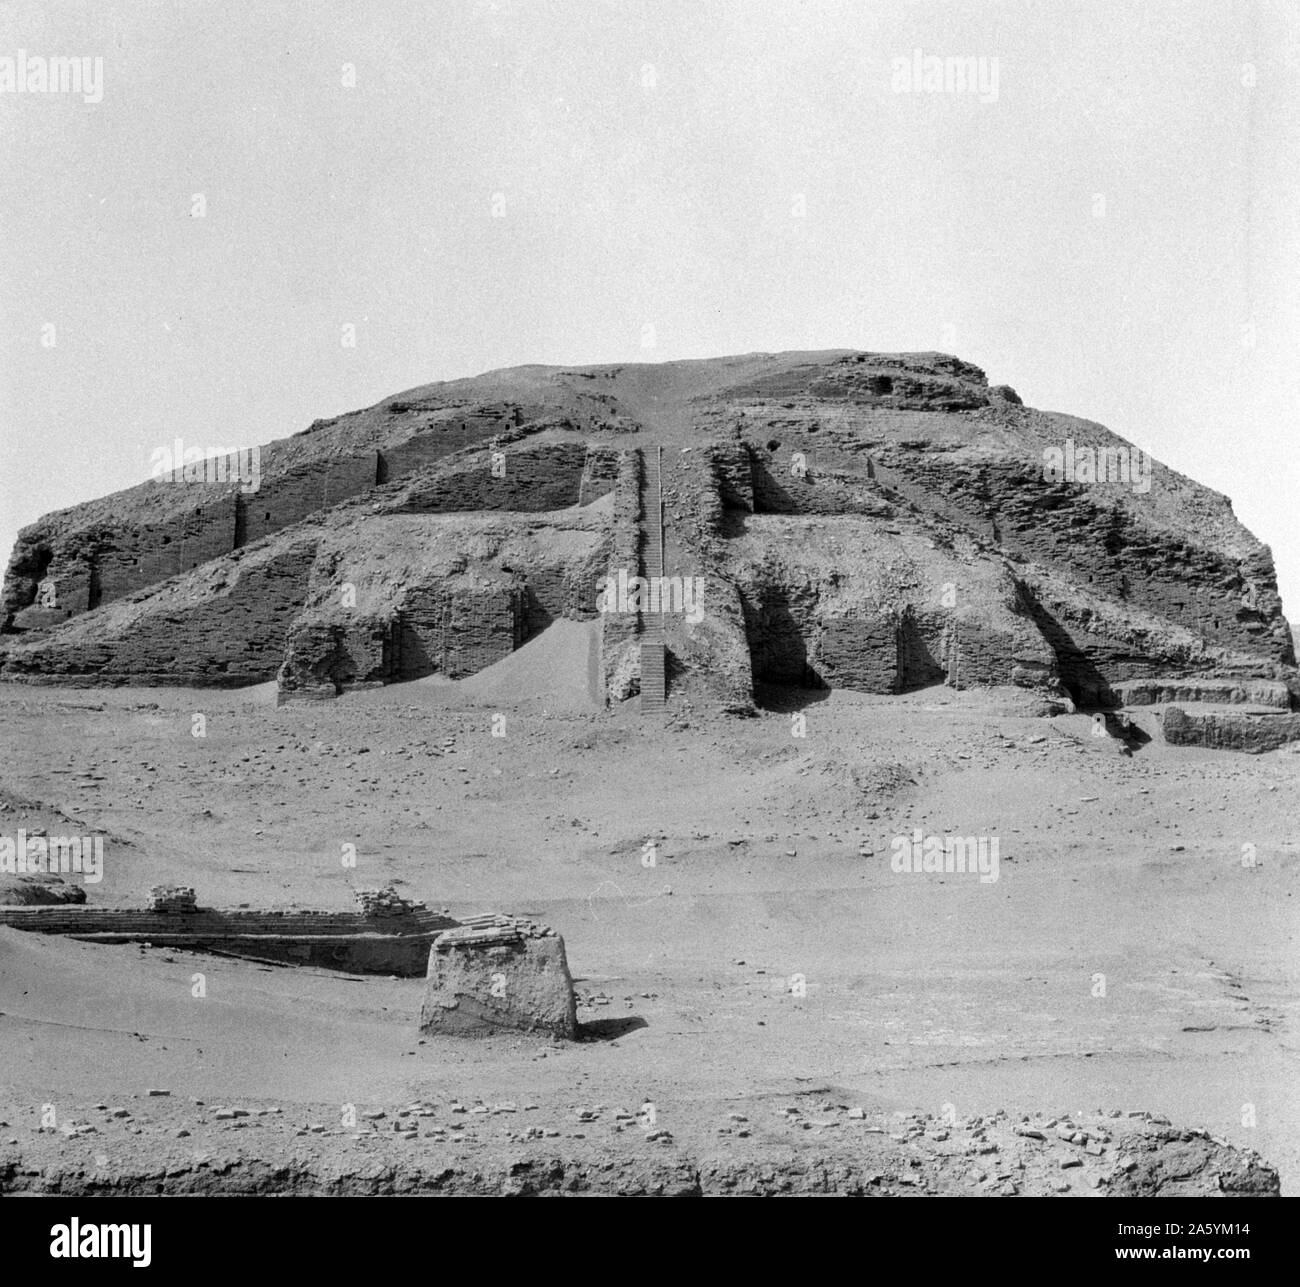 La Grande Ziggurat di Ur, vicino a Nassiriya in Iraq. Ziggurat erano stati costruiti dai Sumeri, Babilonesi, Elamiti, Acadians e assiri per religioni locali. Ogni ziggurat era parte di un tempio complesso che comprendeva altri edifici. I precursori degli ziggurat sono state sollevate le piattaforme che data dal periodo Ubaid[1] durante il IV millennio a.c. Le prime ziggurat ha iniziato nei pressi della fine dell'inizio periodo dinastico.[2] L'ultima ziggurat mesopotamiche data dal VI secolo A.C. Foto Stock